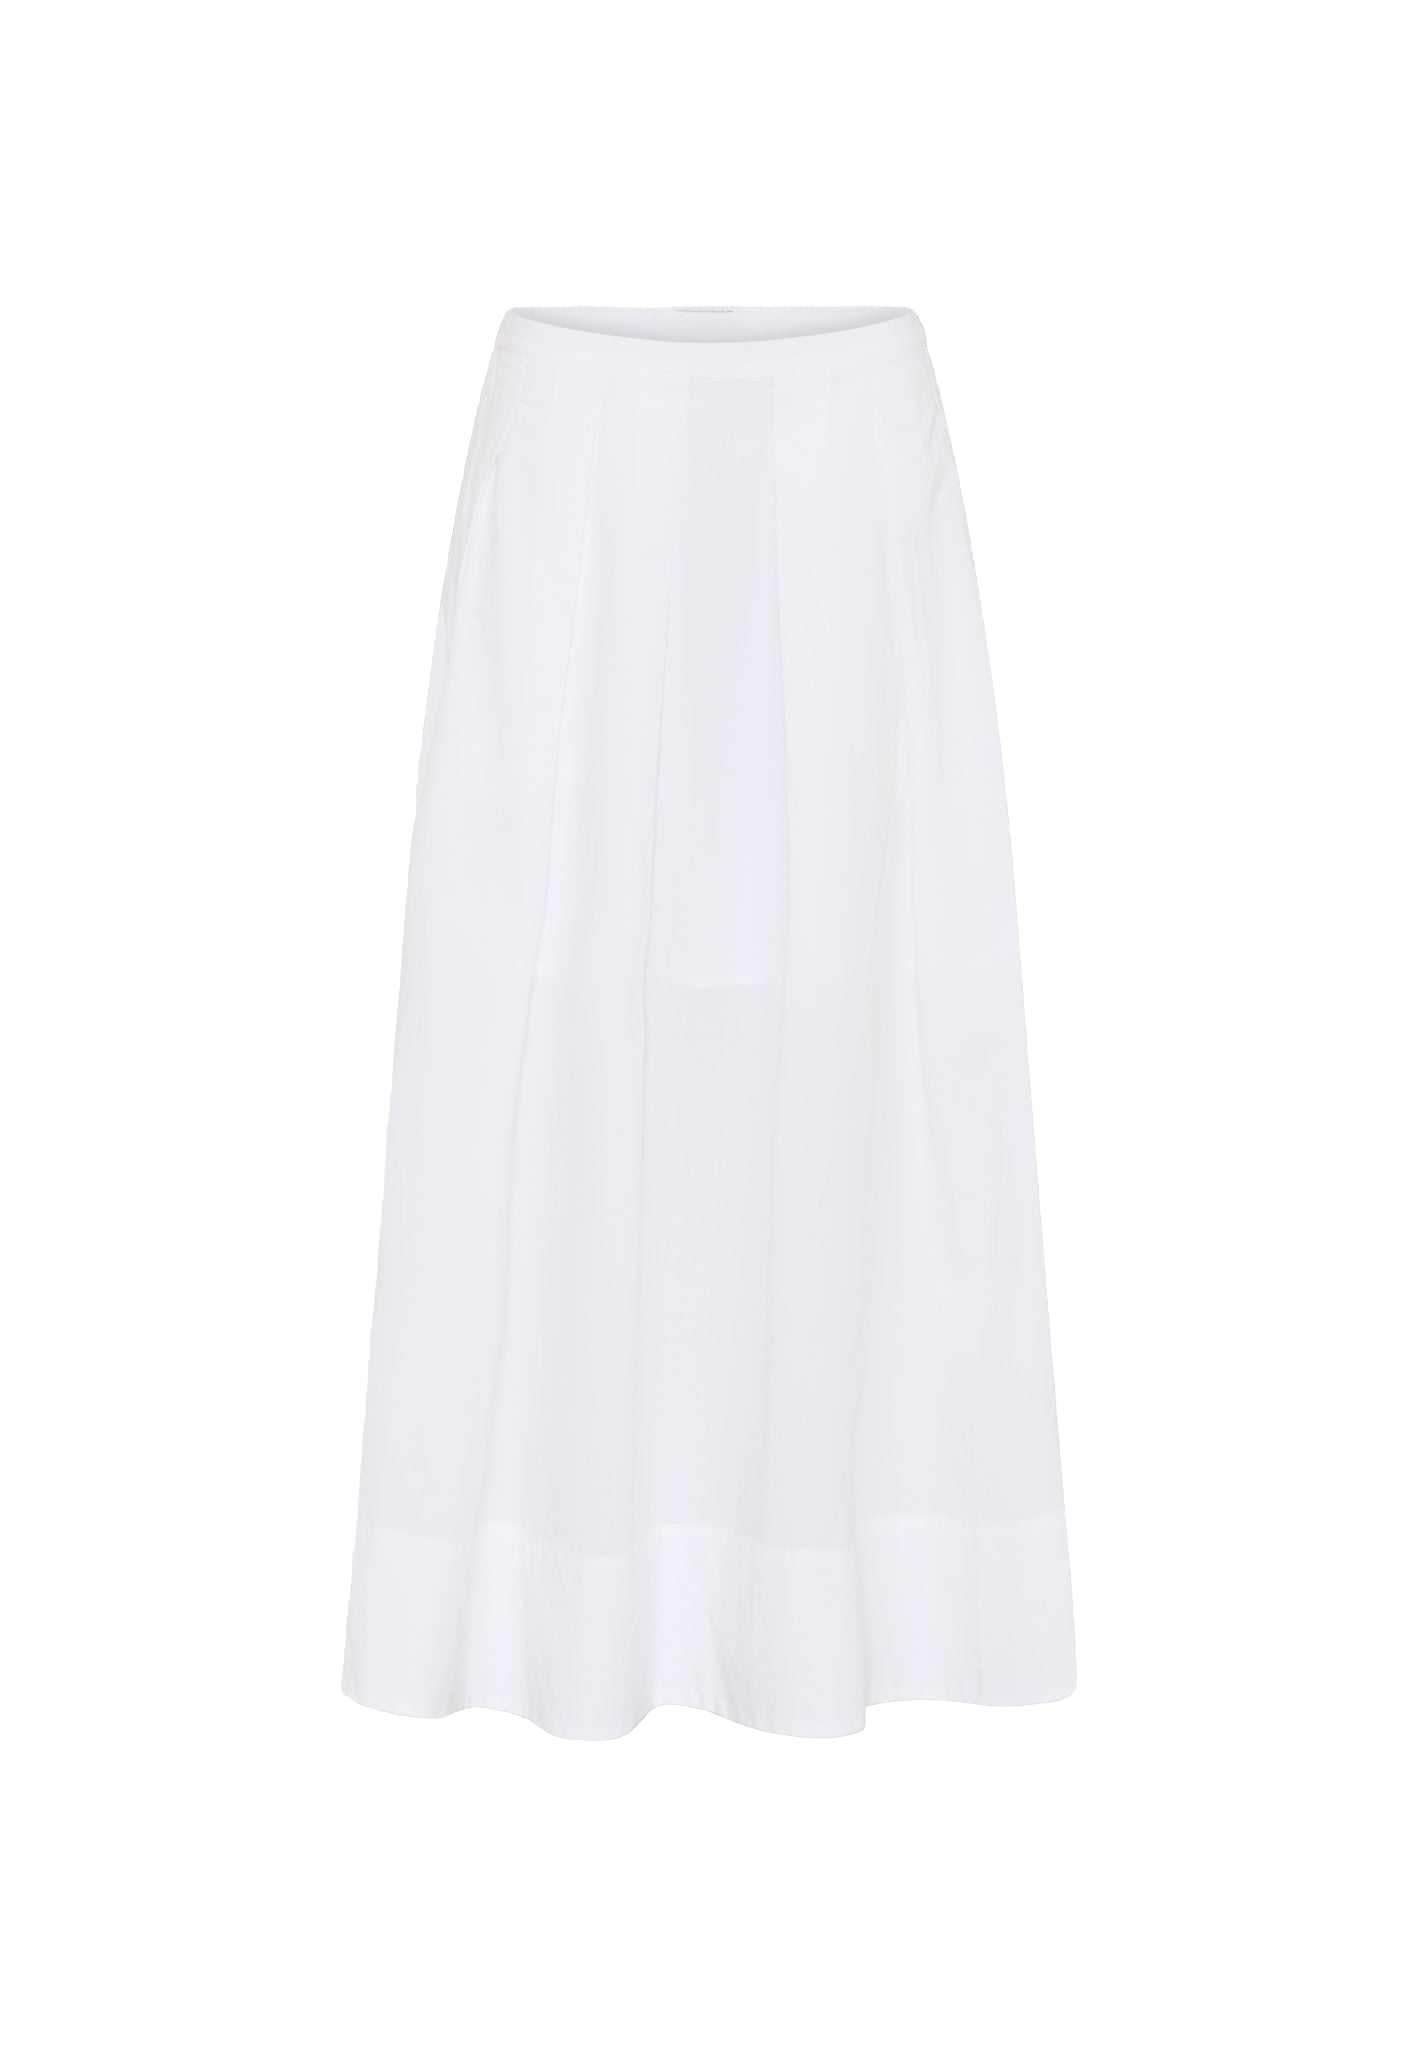 Herskind Herdis Skirt In White